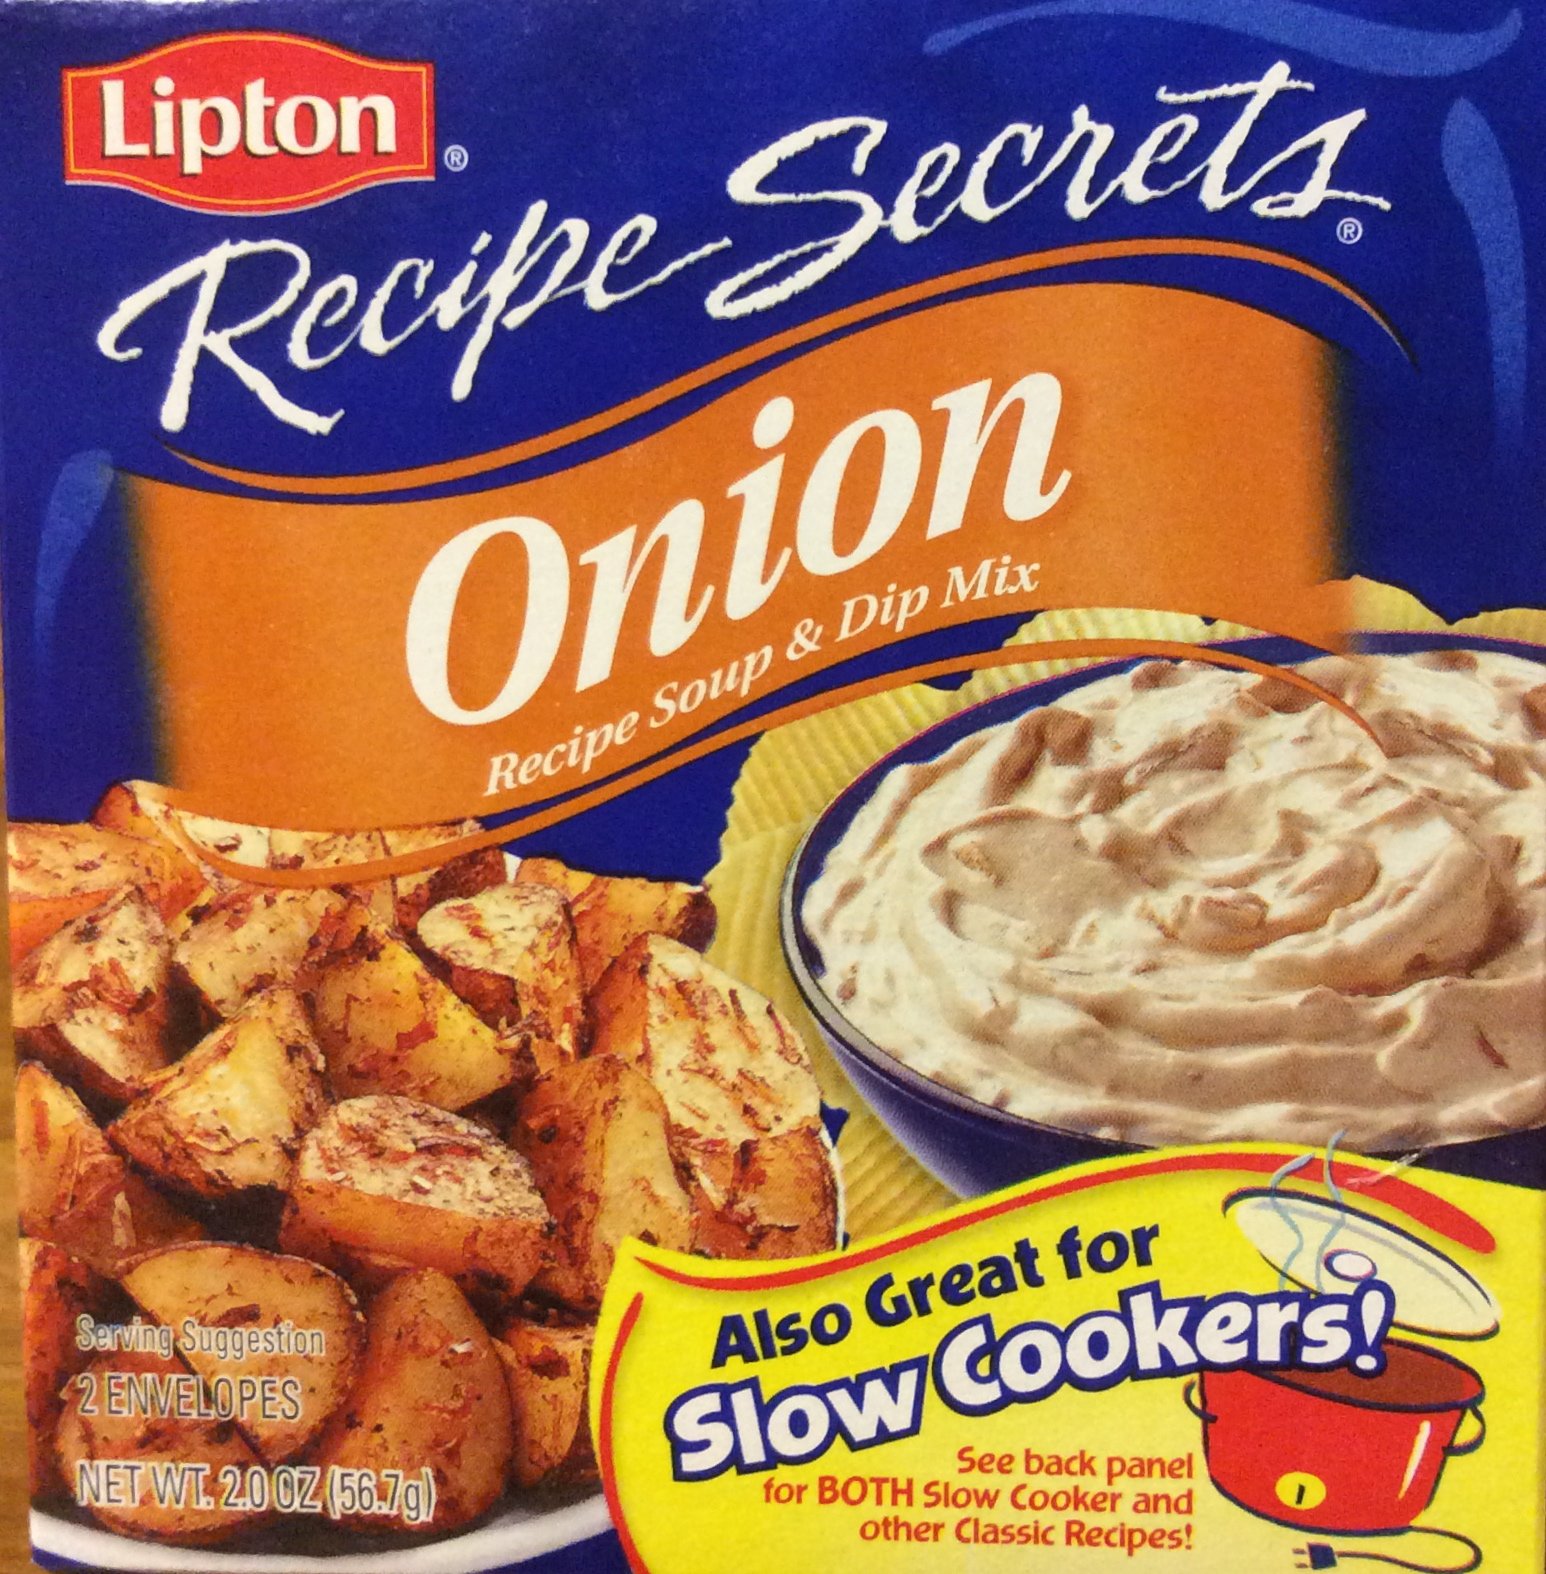 Lipton Recipe Secrets Soup and Dip Mix Onion